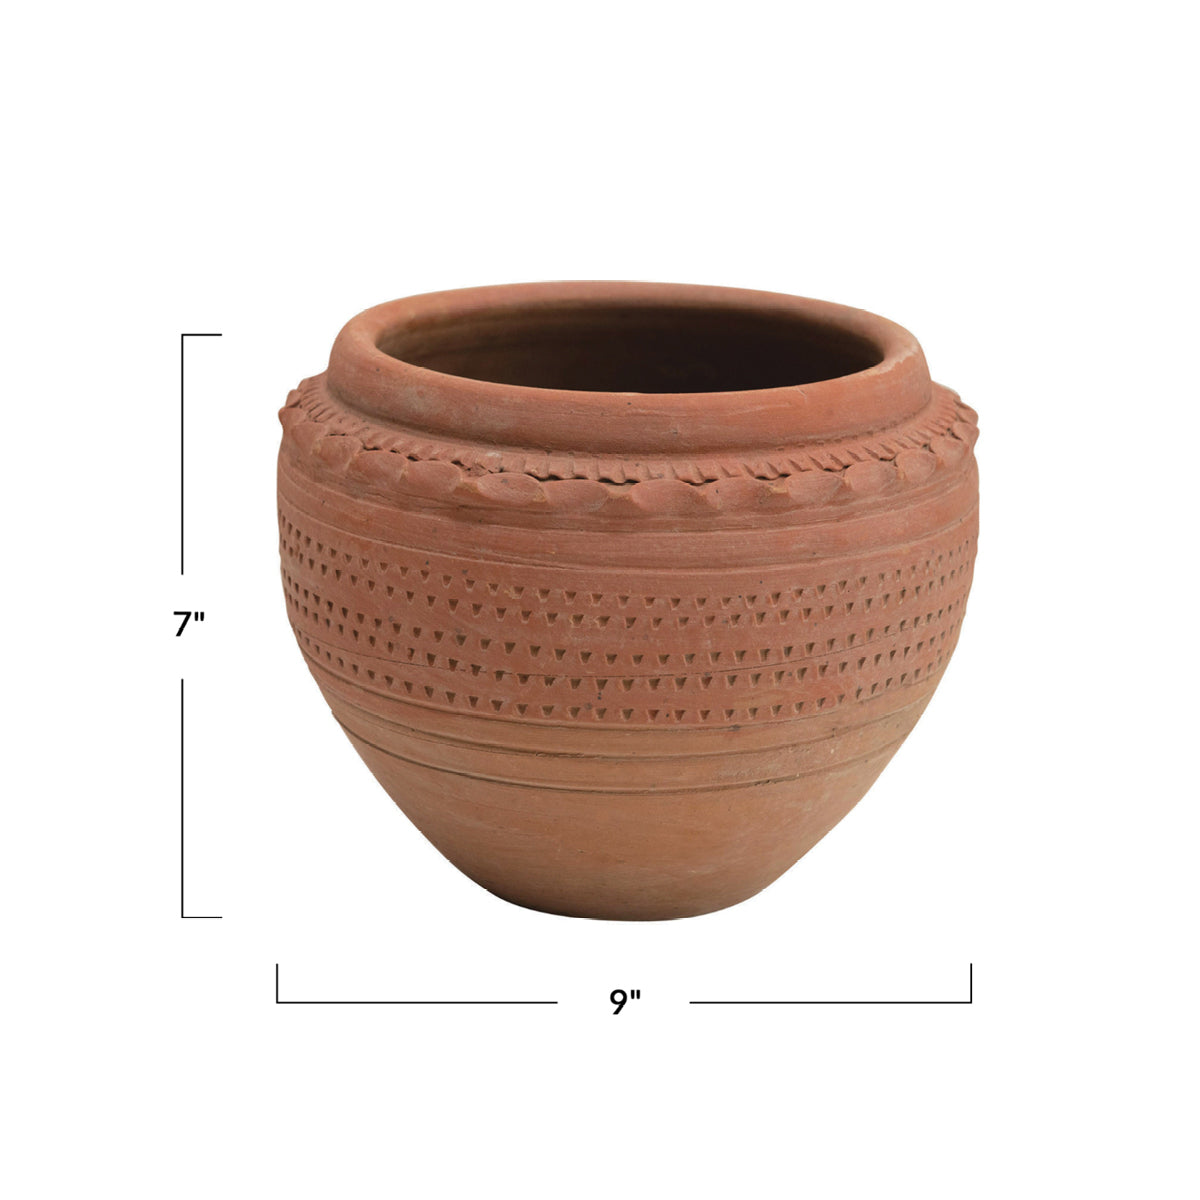 Textured Terracotta Pot